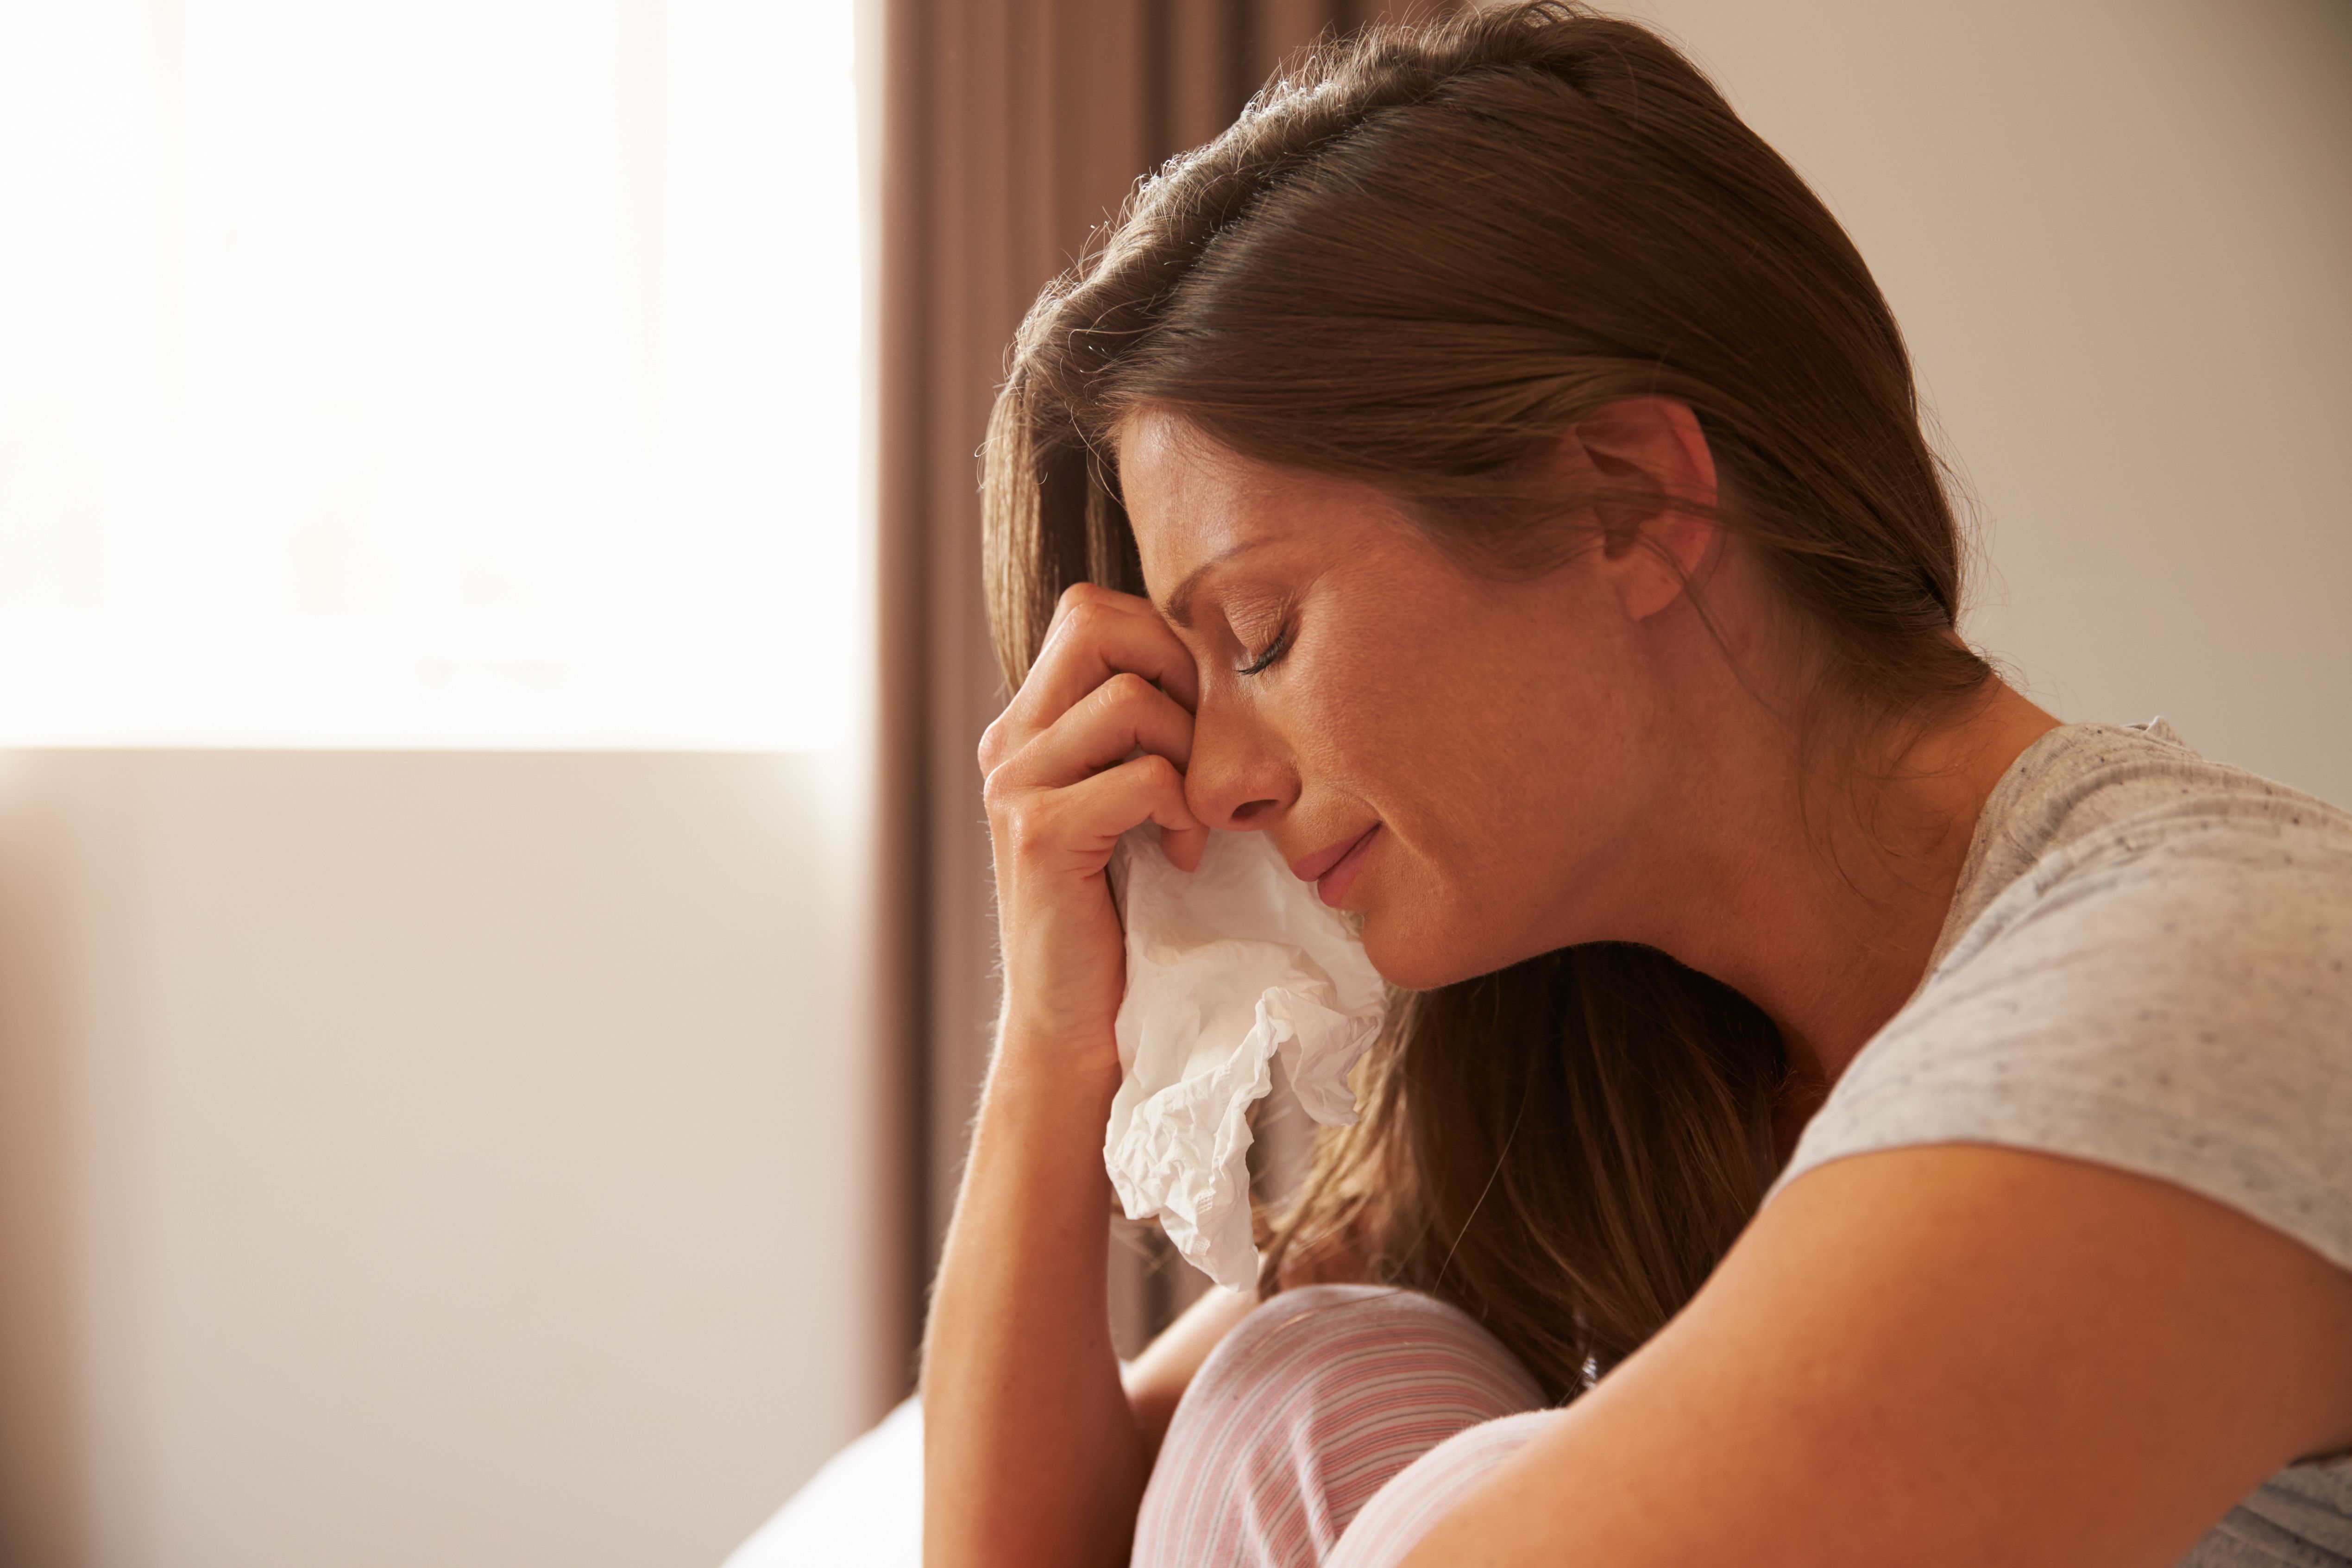 Una mujer llorando. | Fuente: Shutterstock